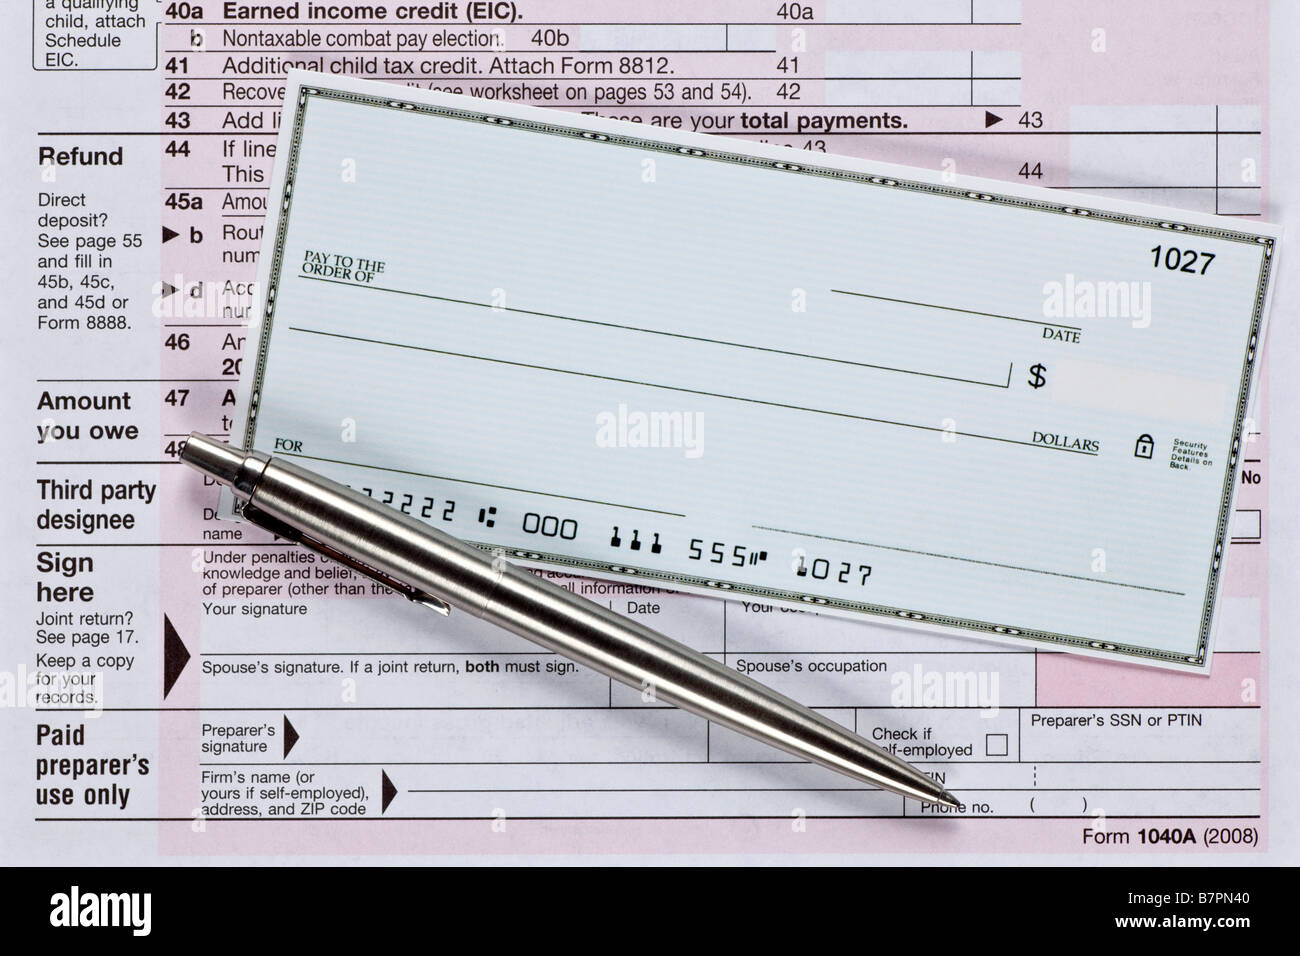 Un cheque en blanco con un bolígrafo en varios formularios de impuestos Foto de stock